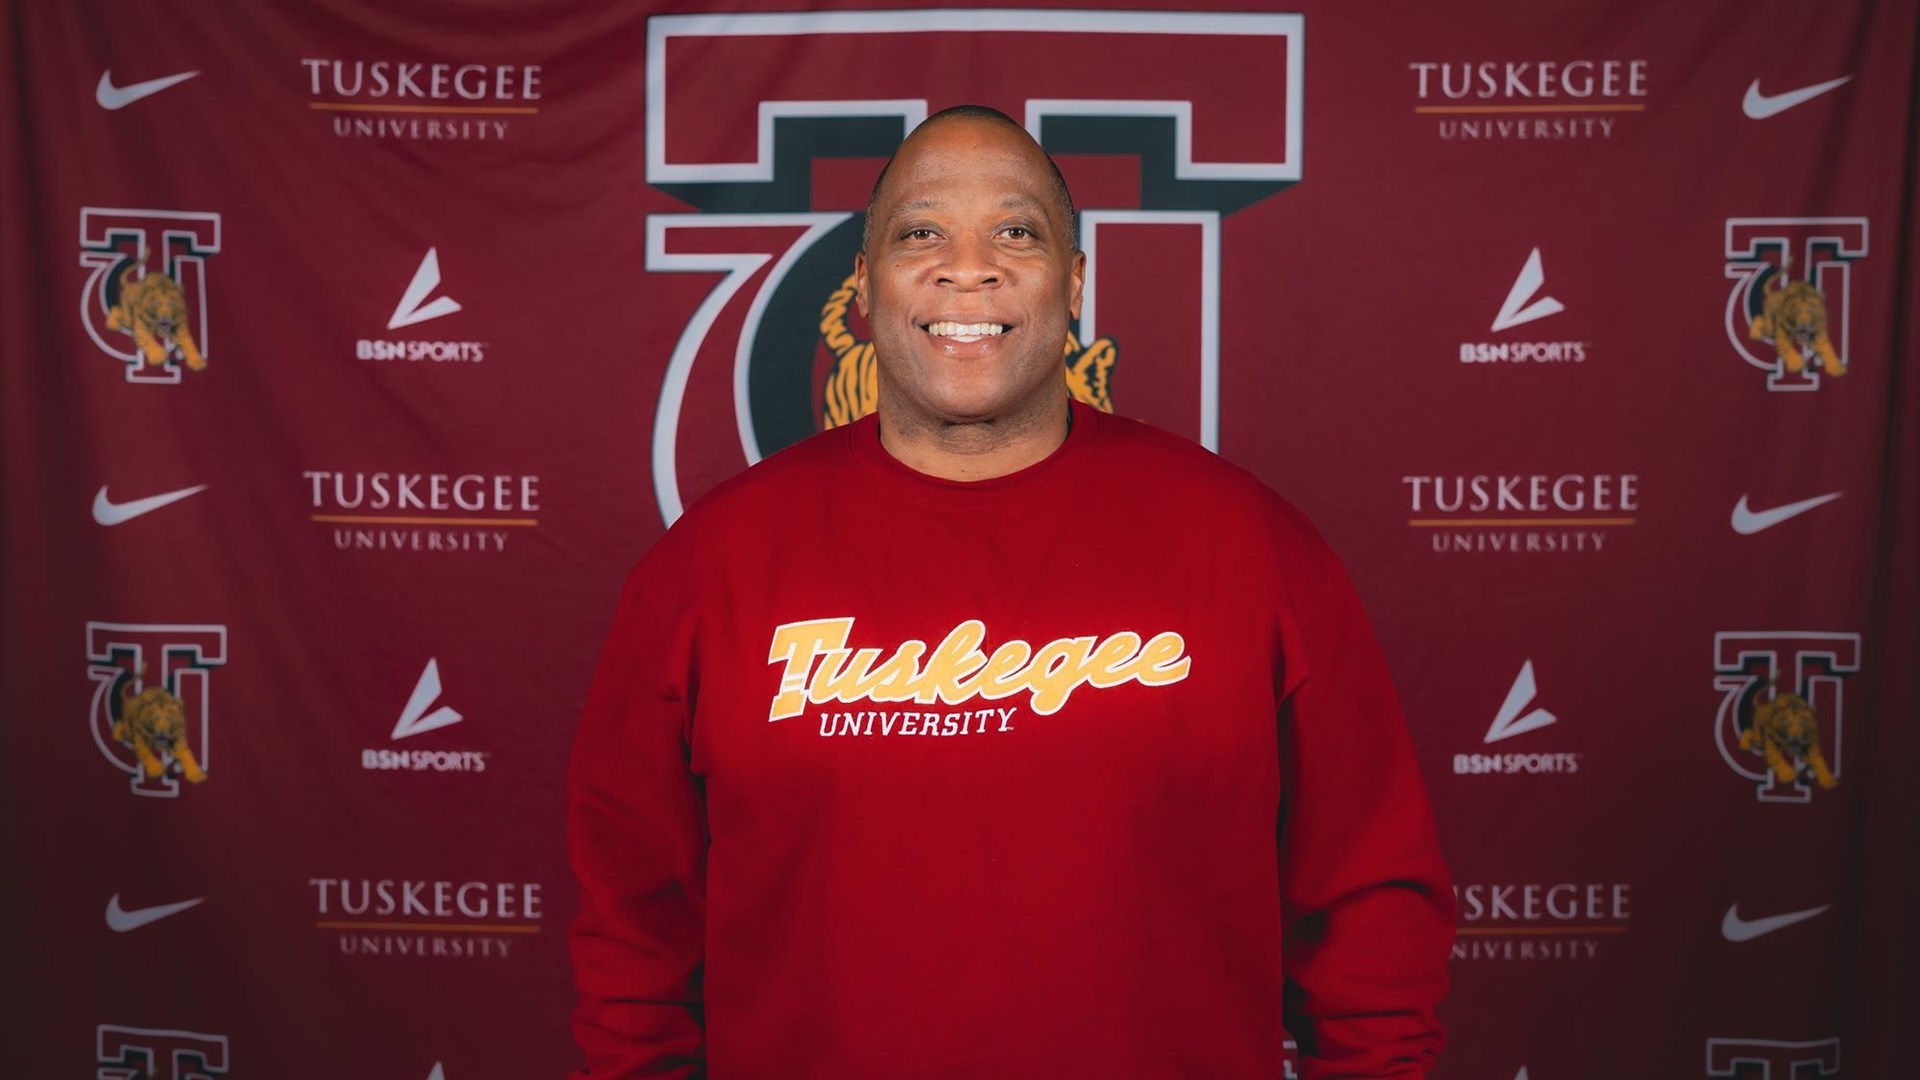 Tuskegee Athletics